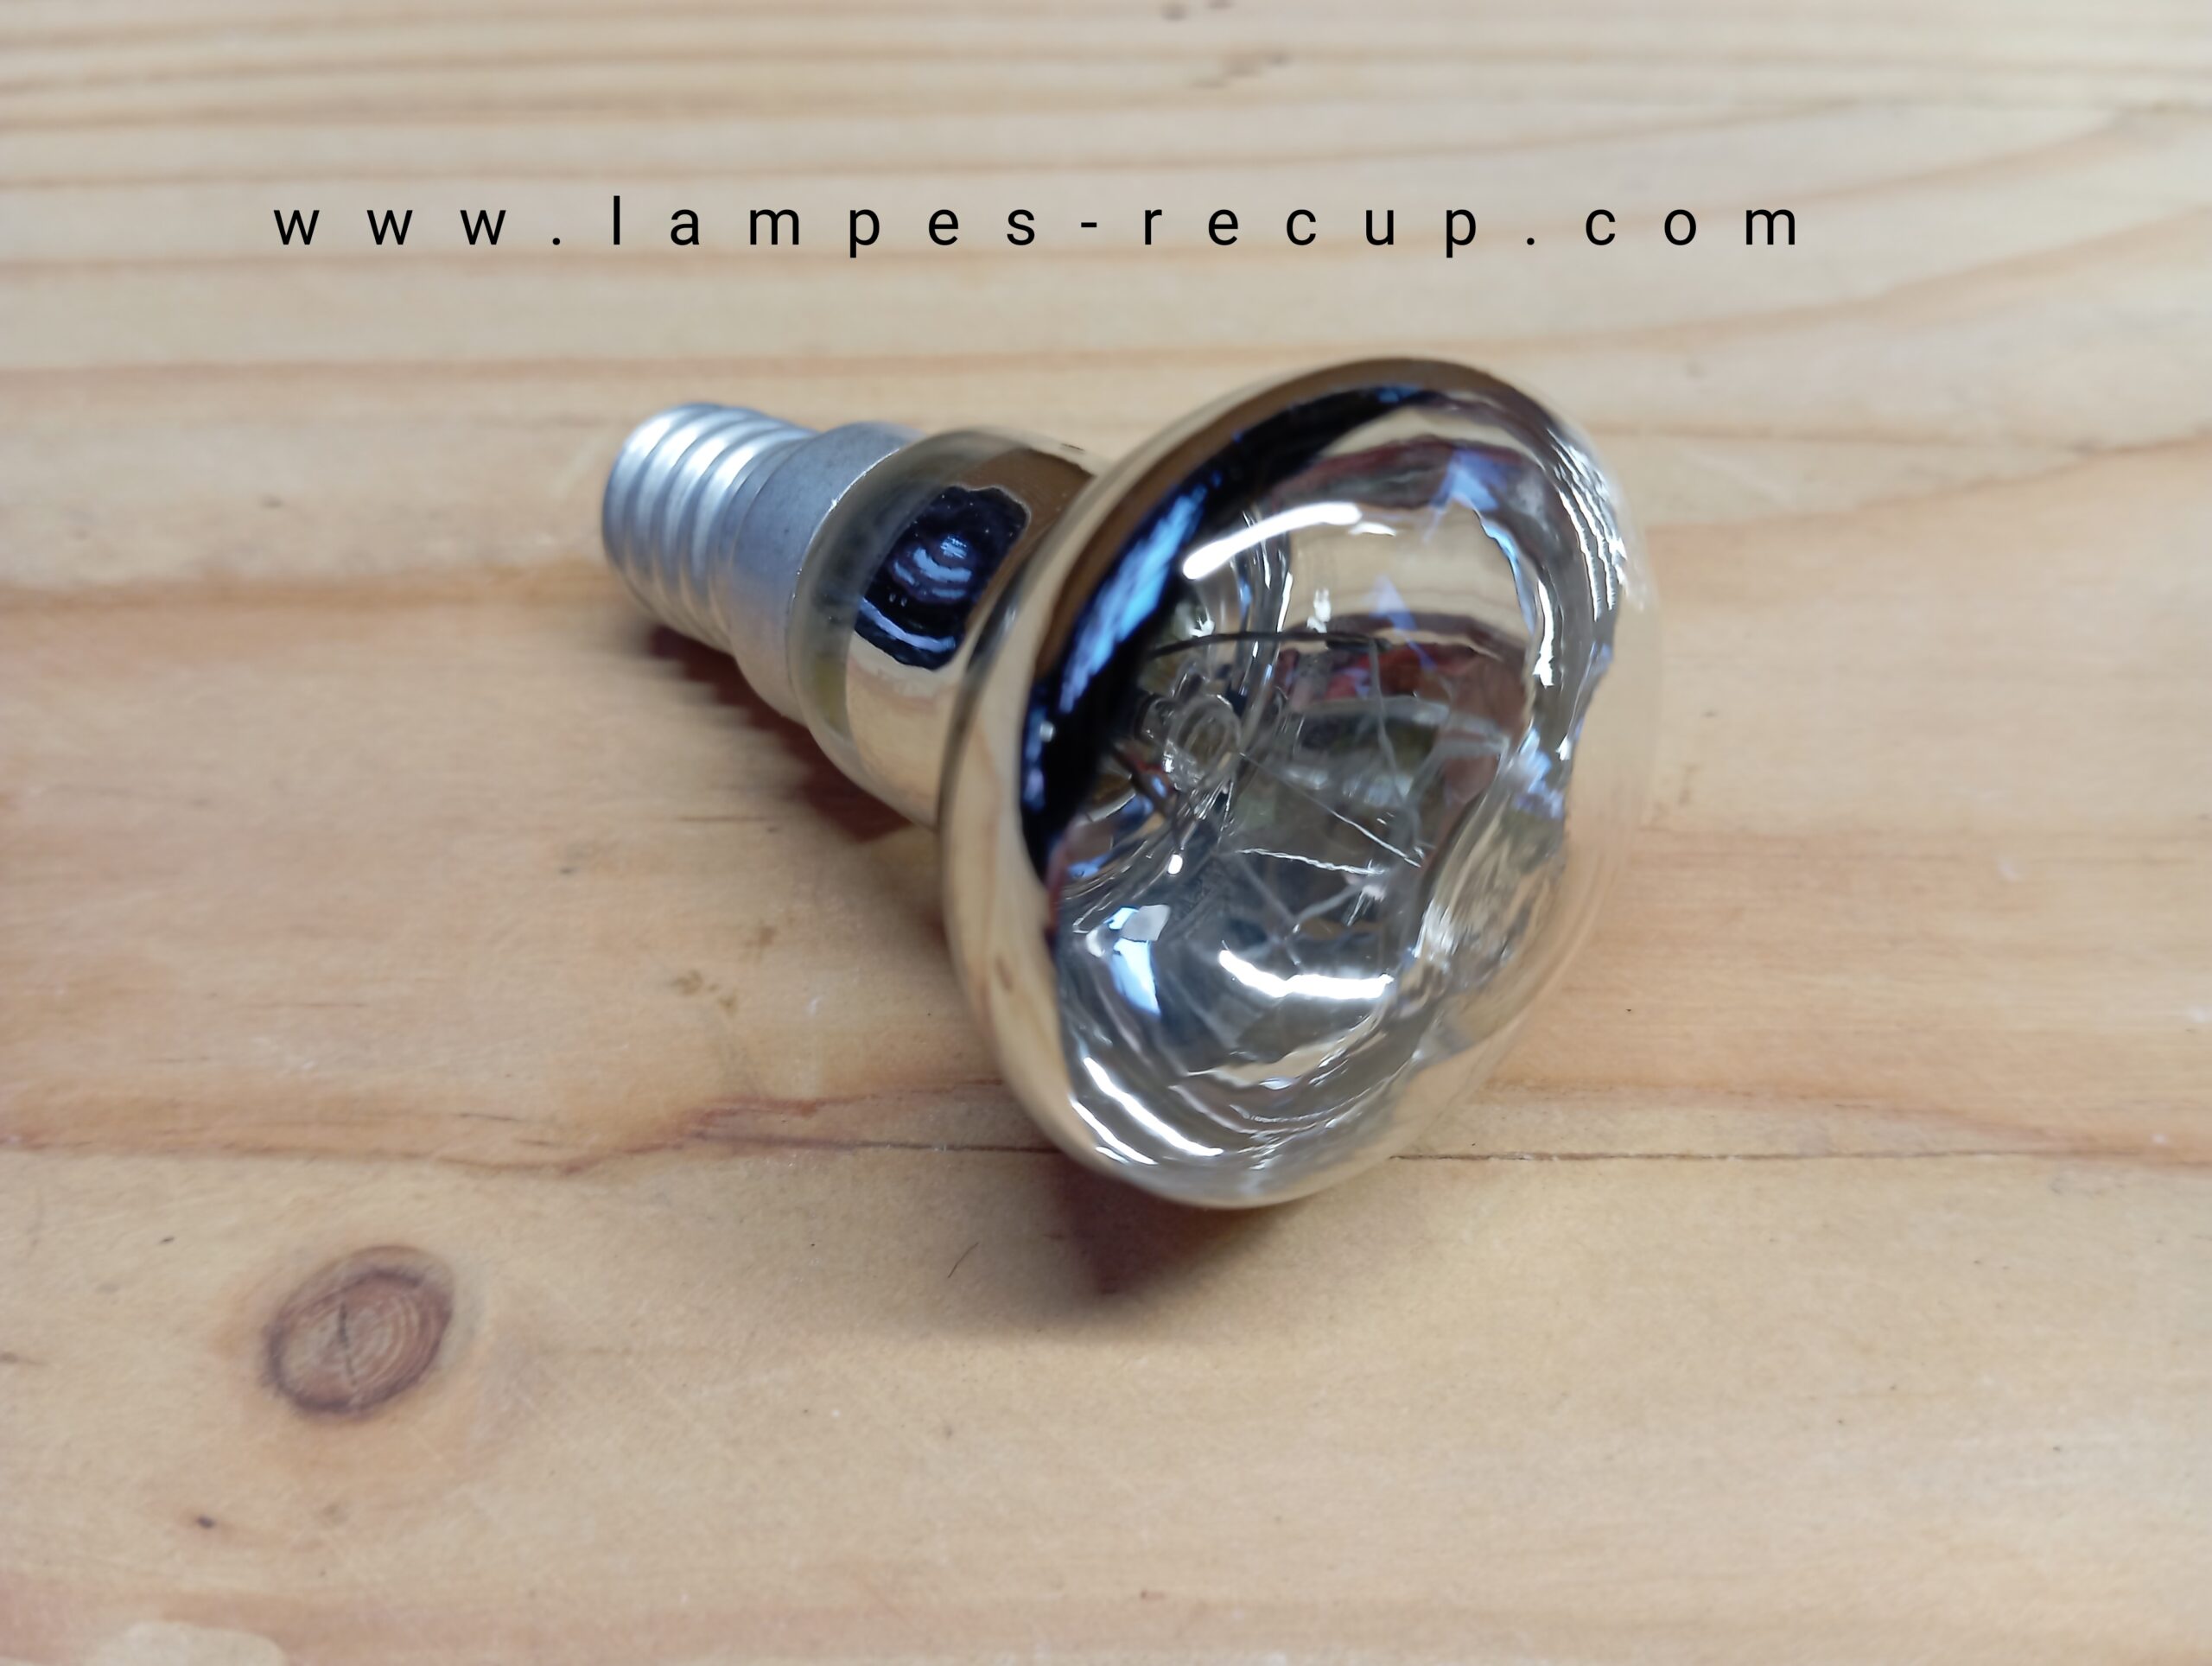 DoRight R39 E14 Ampoules à réflecteur, ampoule de lampe à lave 25W 240V  Spot à réflecteur blanc chaud 2400-2600K pour luminaires suspendus pour  chambres à coucher (paquet de 2) : : Luminaires